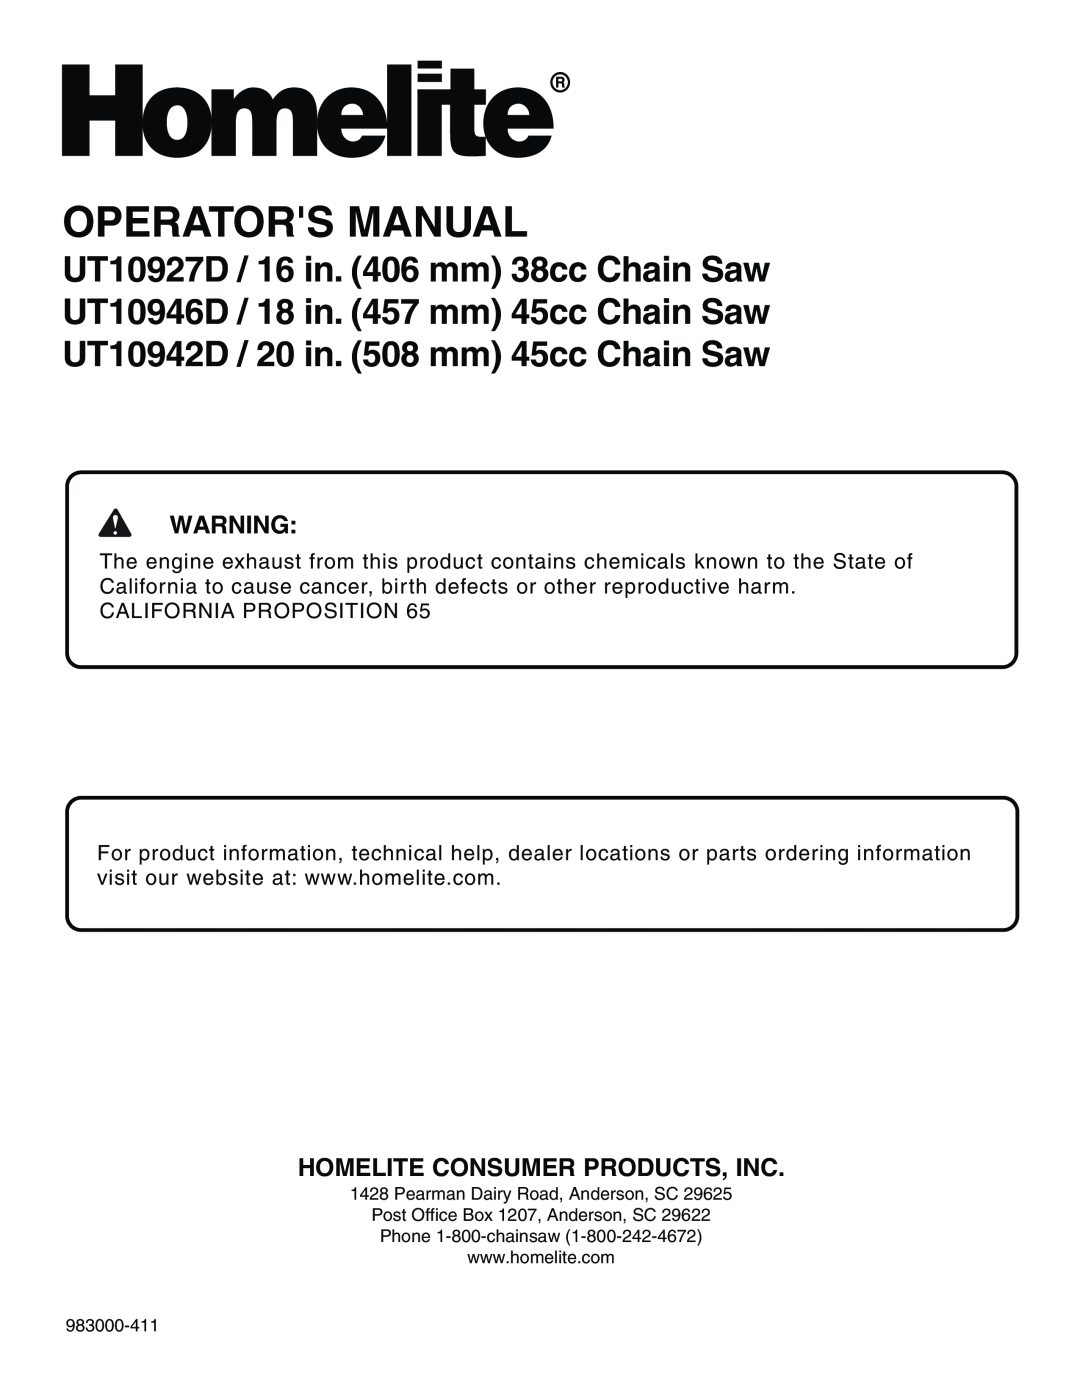 Homelite UT10942D manual Homelite Consumer Products, Inc, Operators Manual 